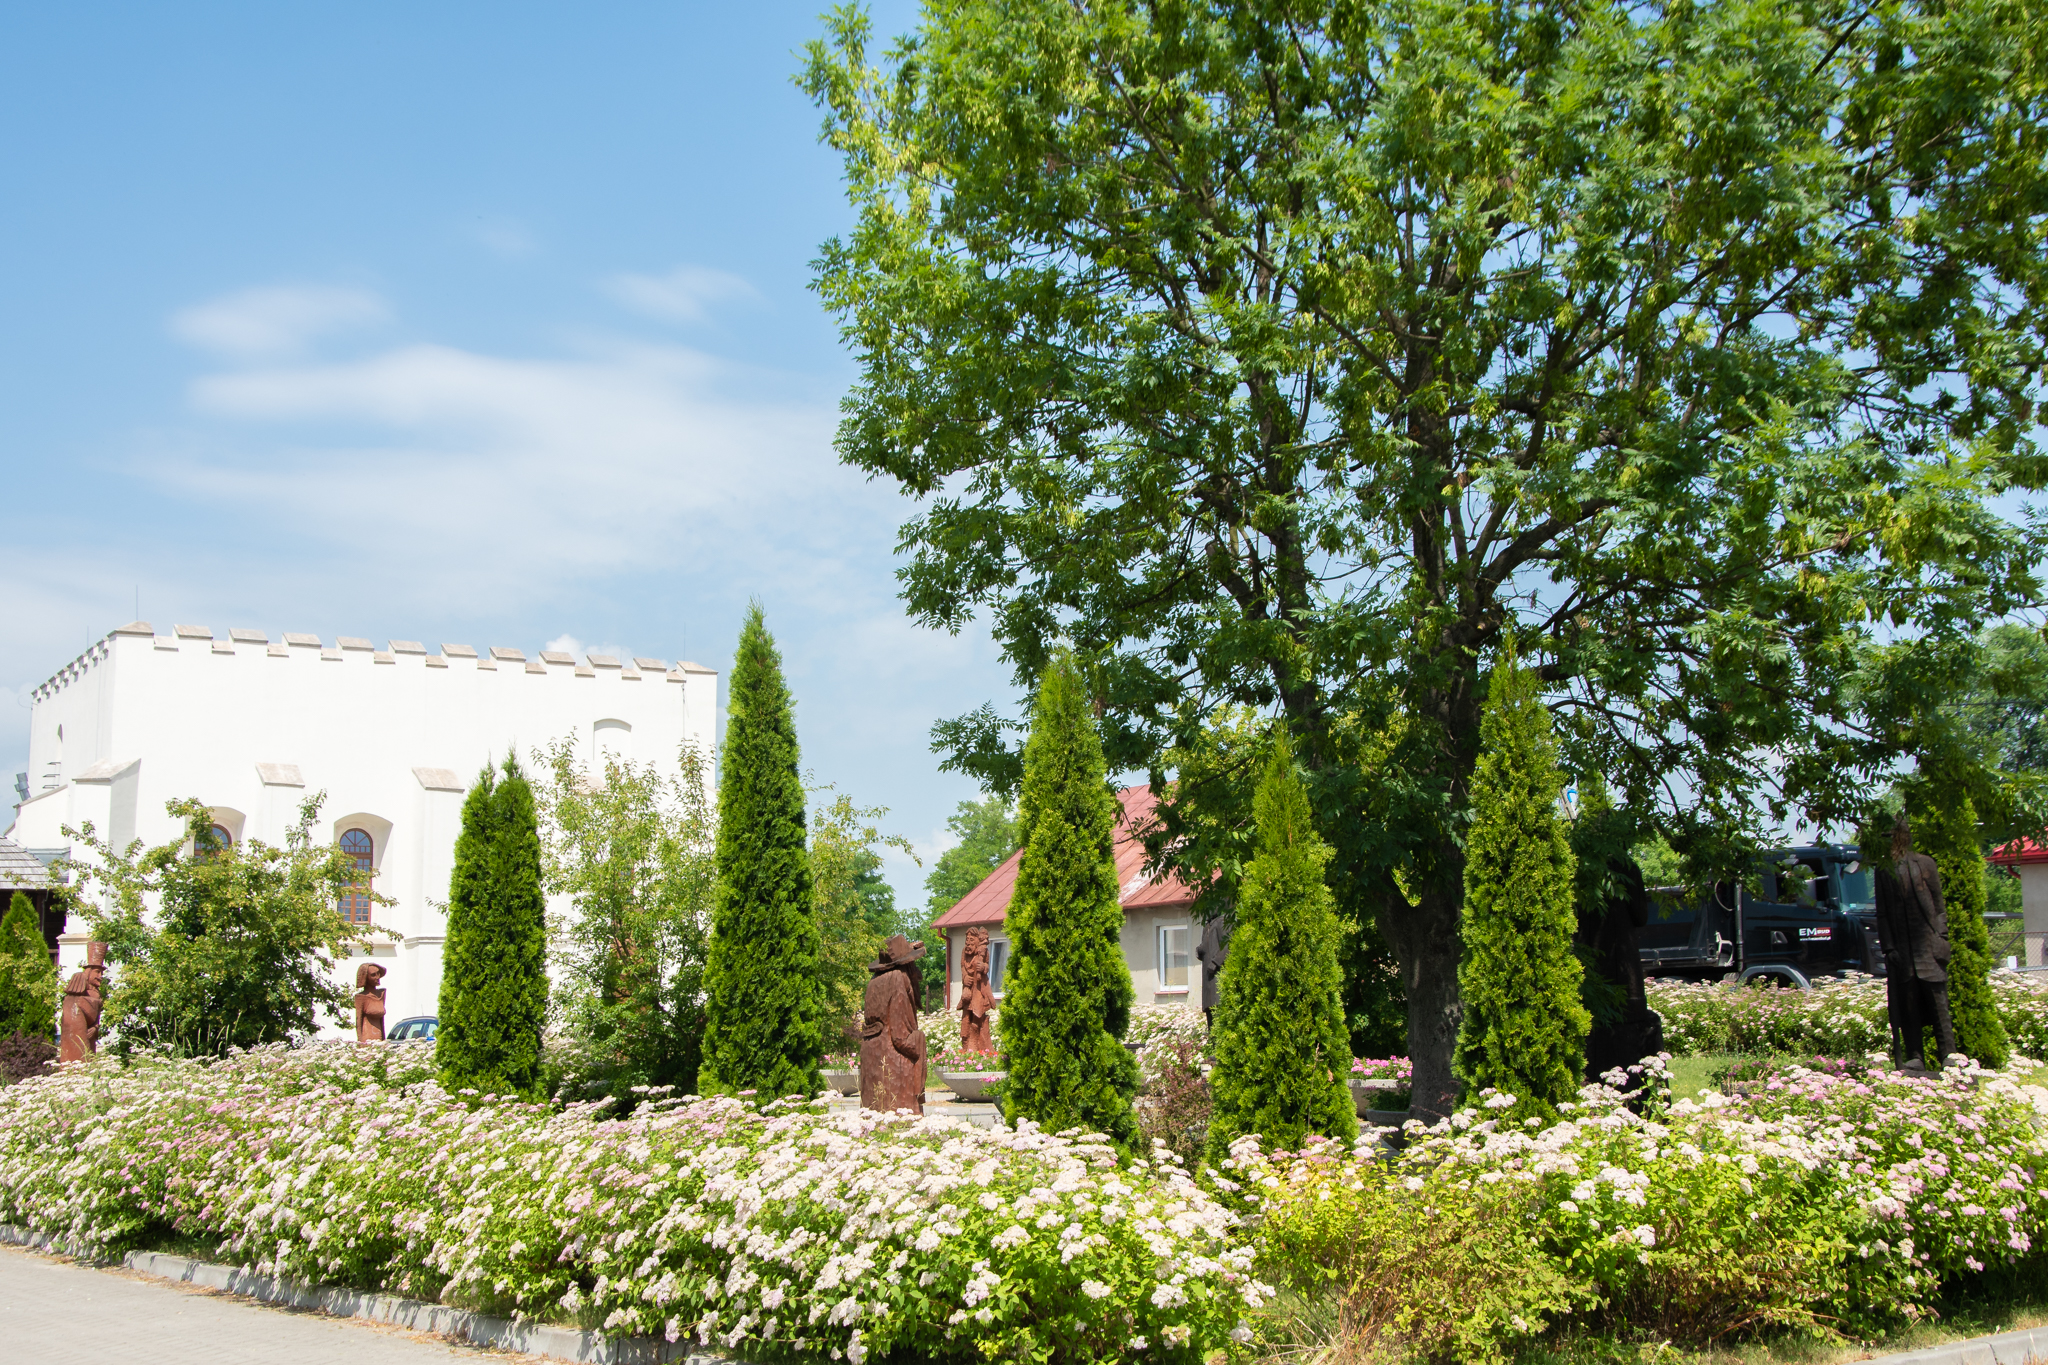 Biała, niewielka synagoga w kształcie kostki, jest schowana za kwiatami i małymi drzewkami.